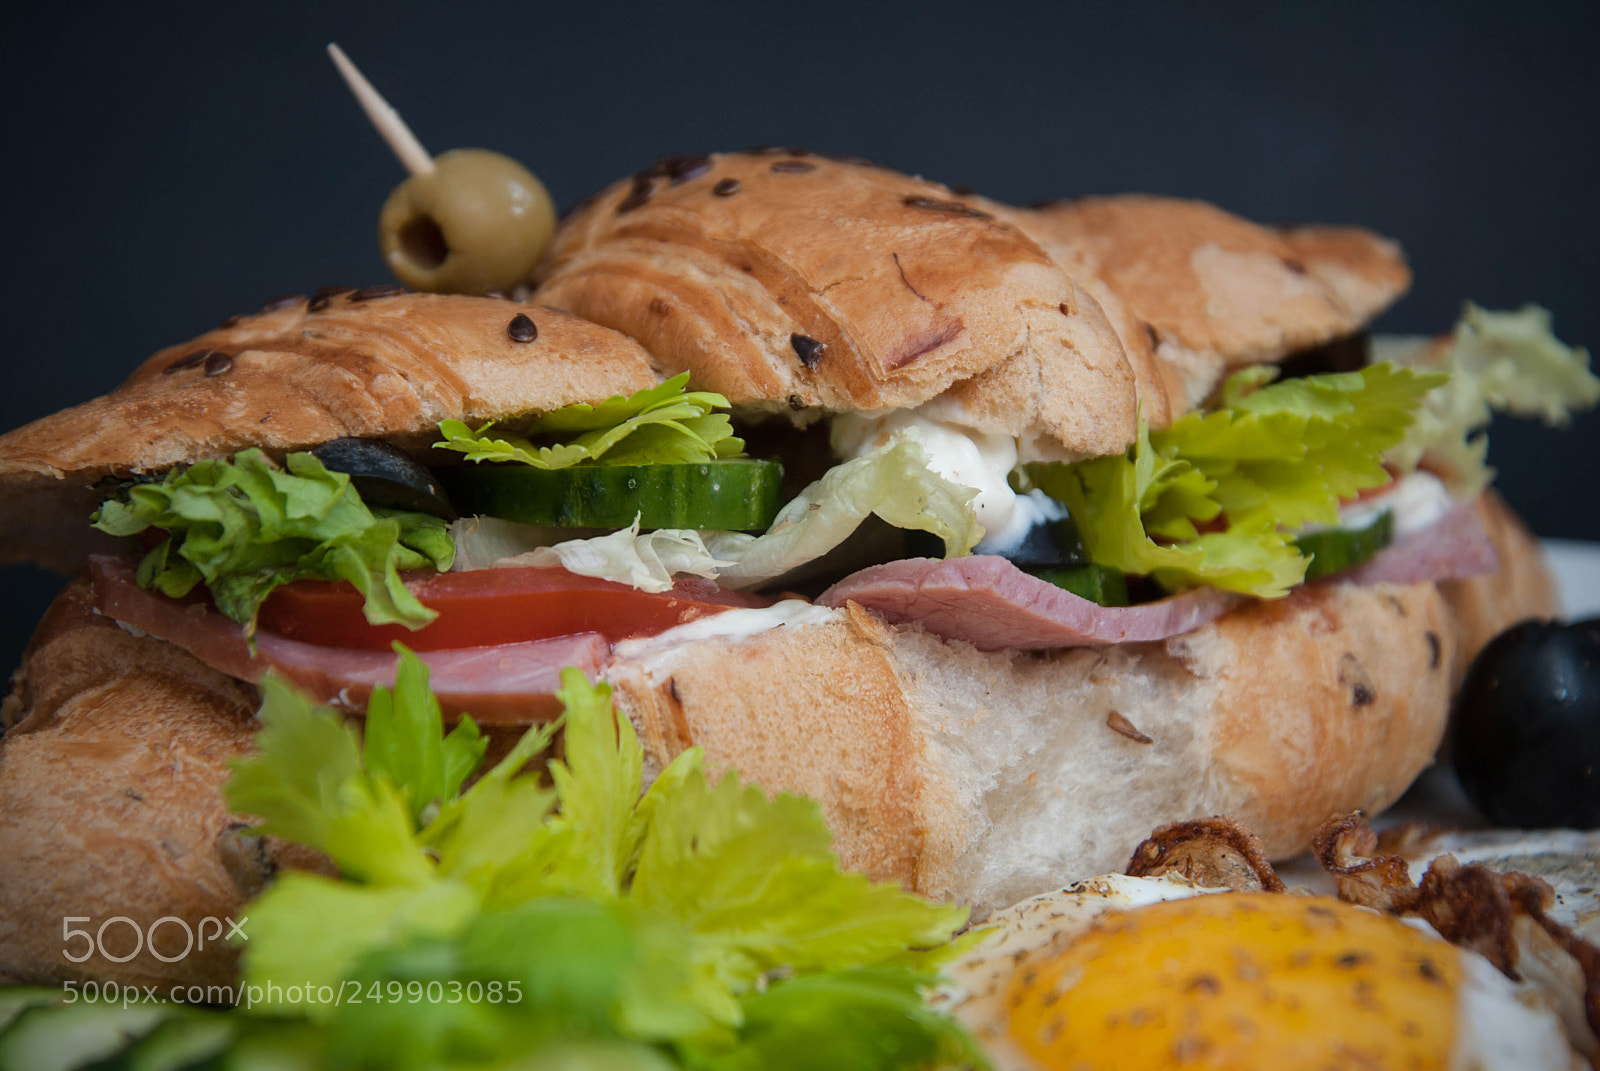 Nikon D80 sample photo. Close up croissant sandwich photography